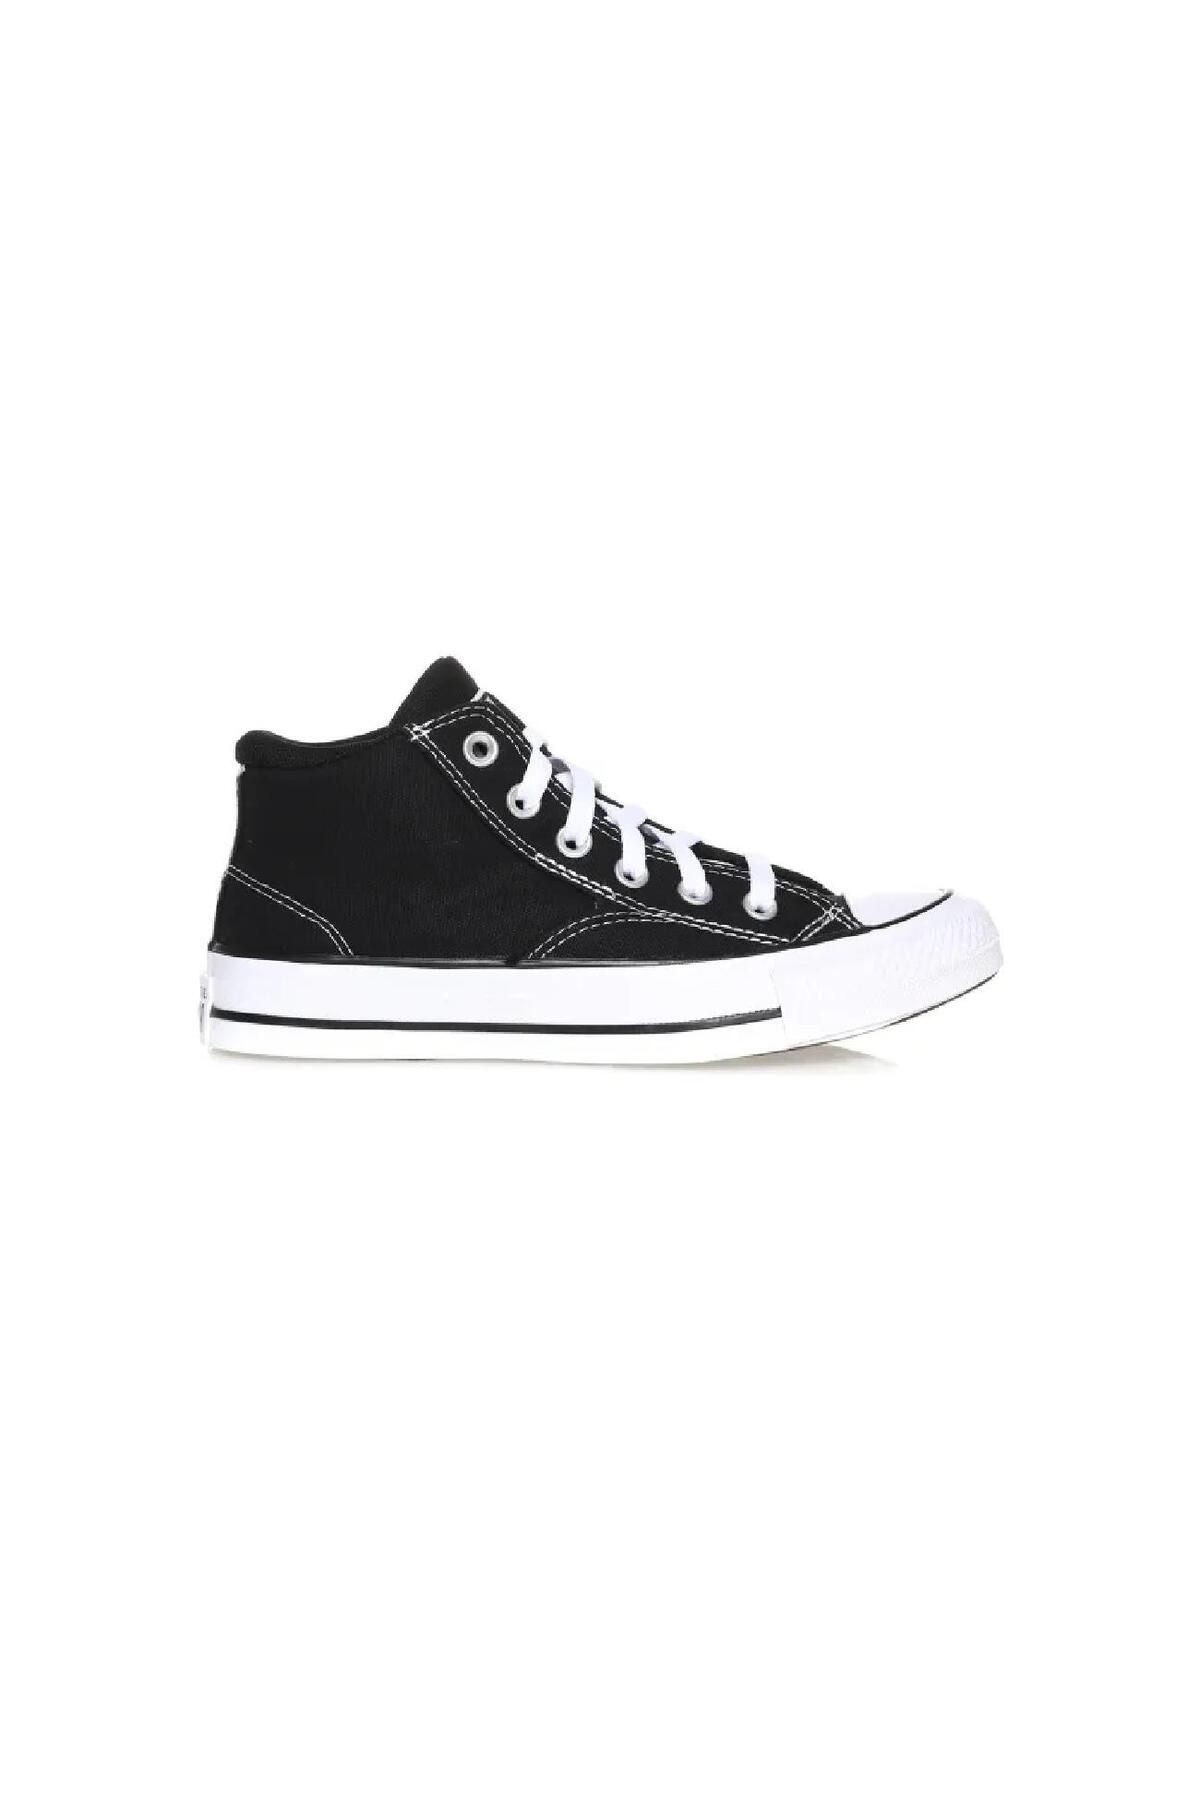 Converse A00811c Ayakkabı Siyah